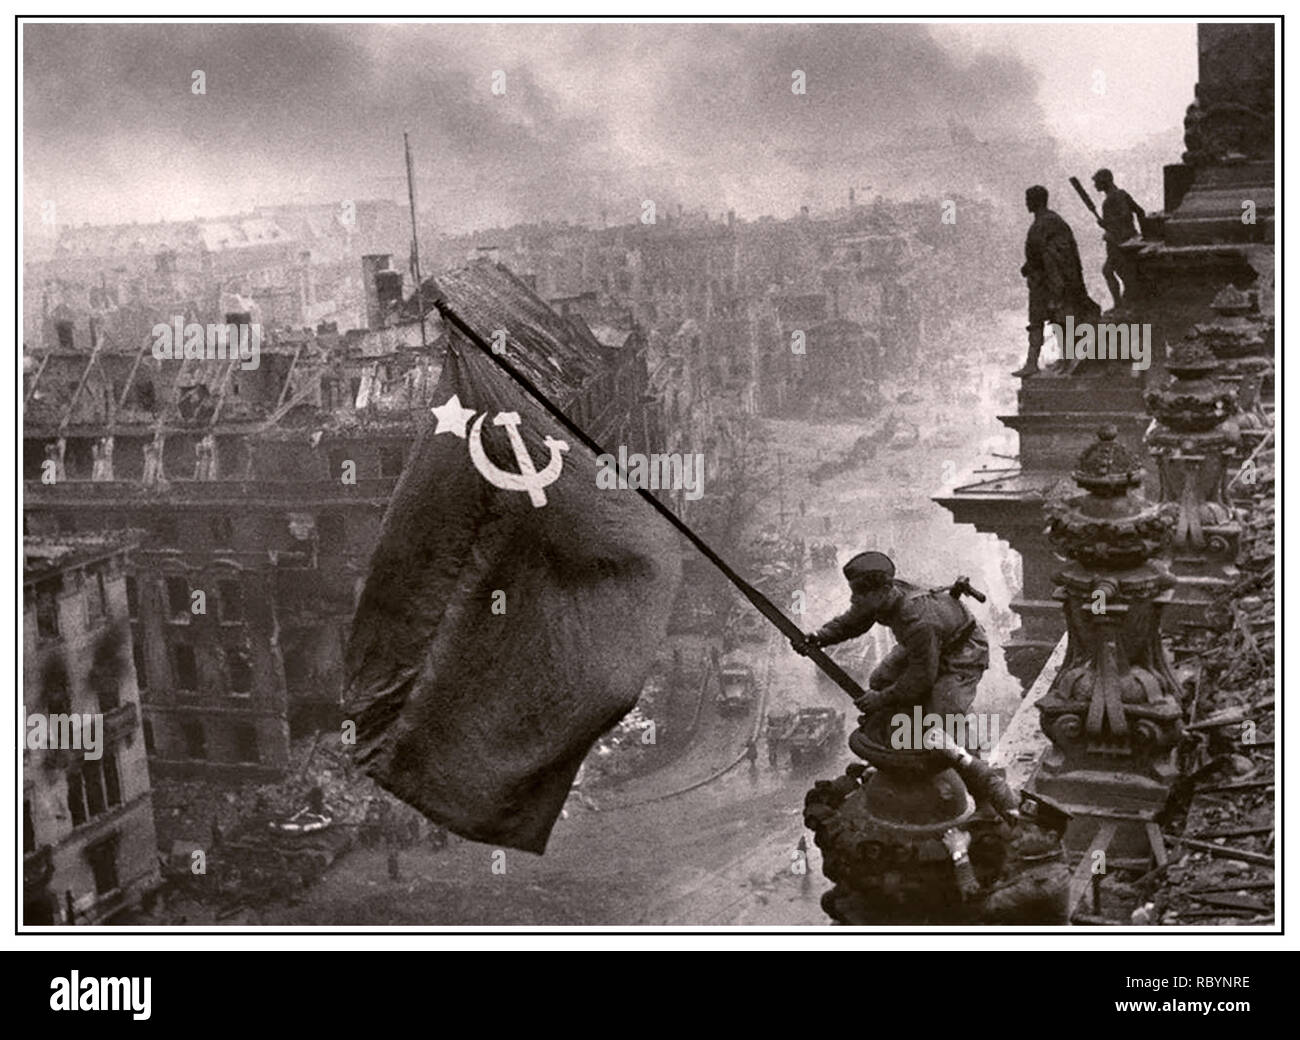 DRAPEAU SOVIÉTIQUE DE L'ARMÉE RUSSE SUR LE REICHSTAG DE BERLIN NAZI DEUXIÈME GUERRE MONDIALE ALLEMAGNE. Image emblématique de l'élévation d'un drapeau soviétique russe sur le Reichstag, une photographie historique de la Seconde Guerre mondiale, prise pendant la bataille de Berlin le 2 mai 1945. Elle montre Meliton Kantaria et Mikhail Yegorov qui élèvent le drapeau du marteau et de la faucille au-dessus du Reichstag de Berlin avec Berlin en ruines. Allemagne WW2 Armée rouge soldats soviétiques Hammer et Sickle drapeau soviétique quartier général nazi Reichstag, Berlin Allemagne 1945 Banque D'Images